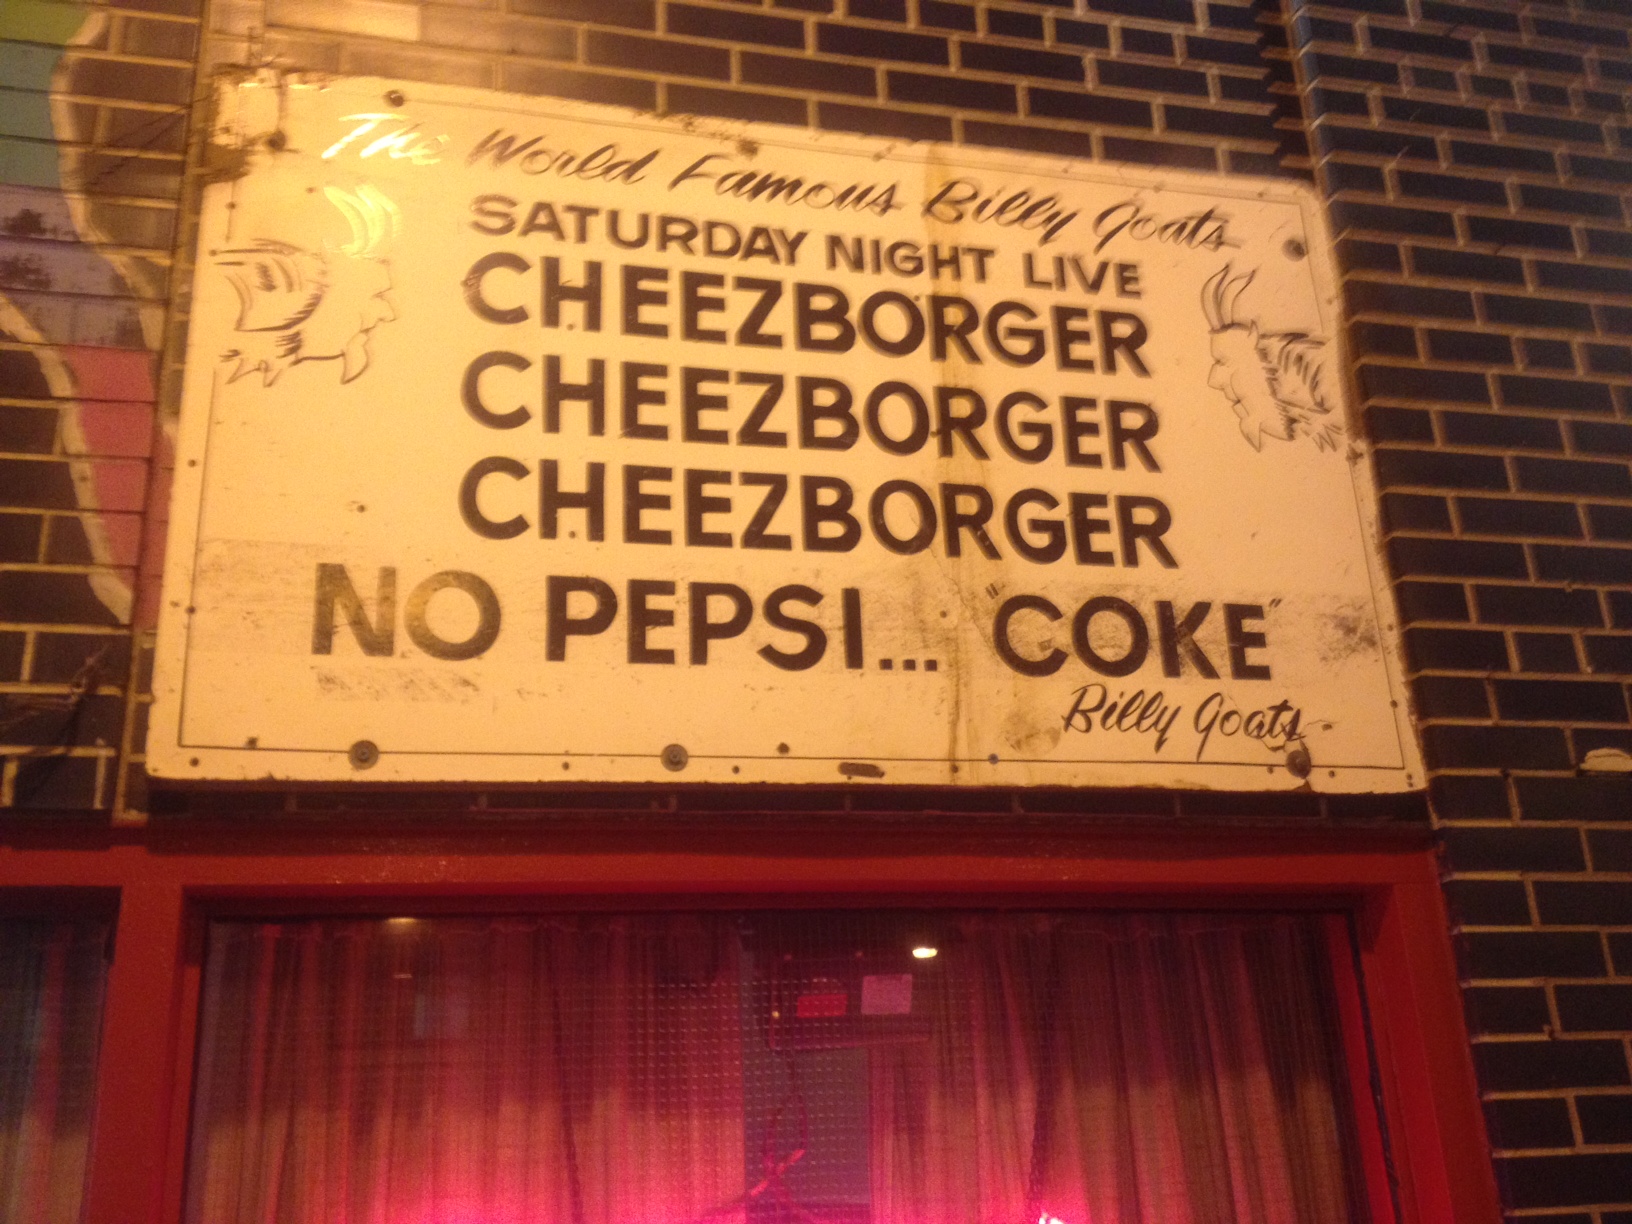 "Cheezborger, Cheezborger, Cheezborger!  No Pepsi... Coke!"